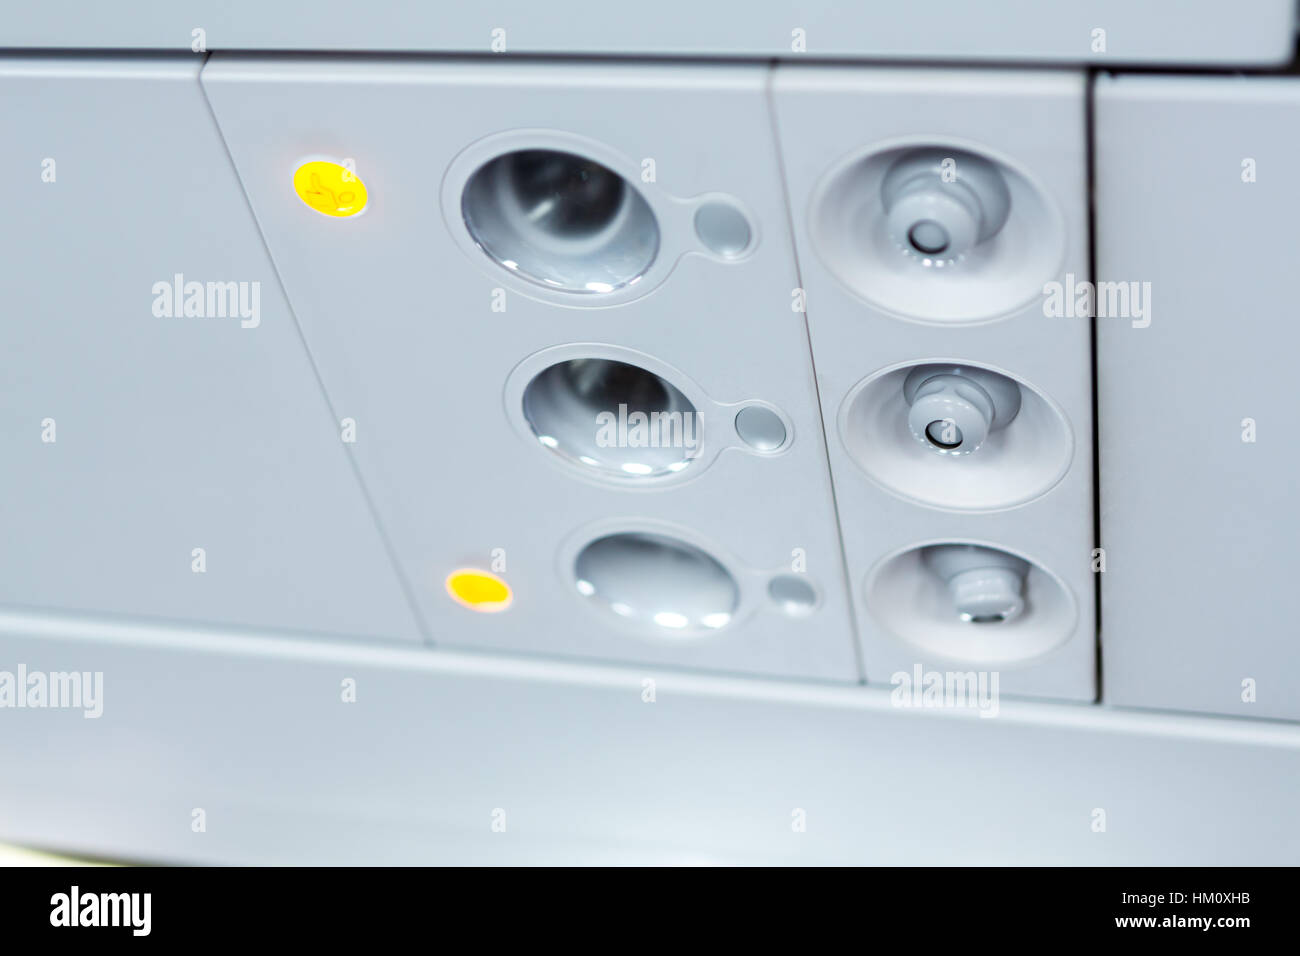 Licht, Luft Zustand Zeichen Panel über den Sitz im Flugzeug Stockfotografie  - Alamy